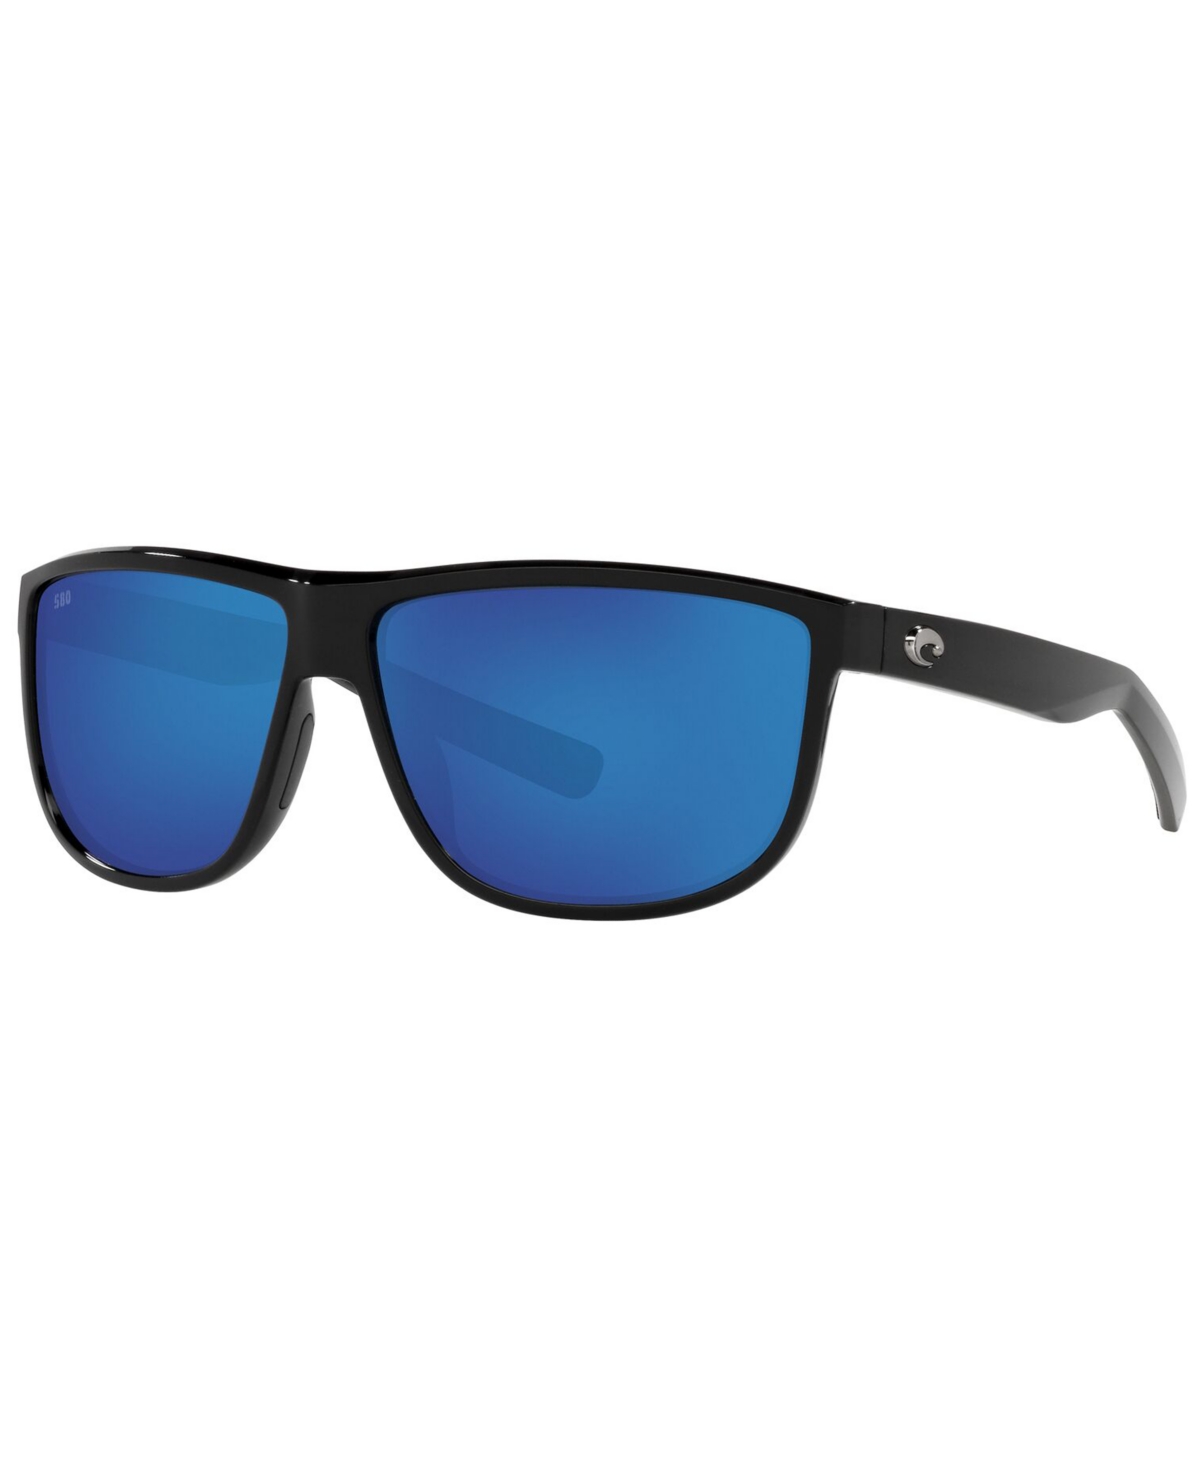 Costa Del Mar Rincondo Polarized Sunglasses, 6s9010 61 In Matte Smoke Crystal,blue Mirror P